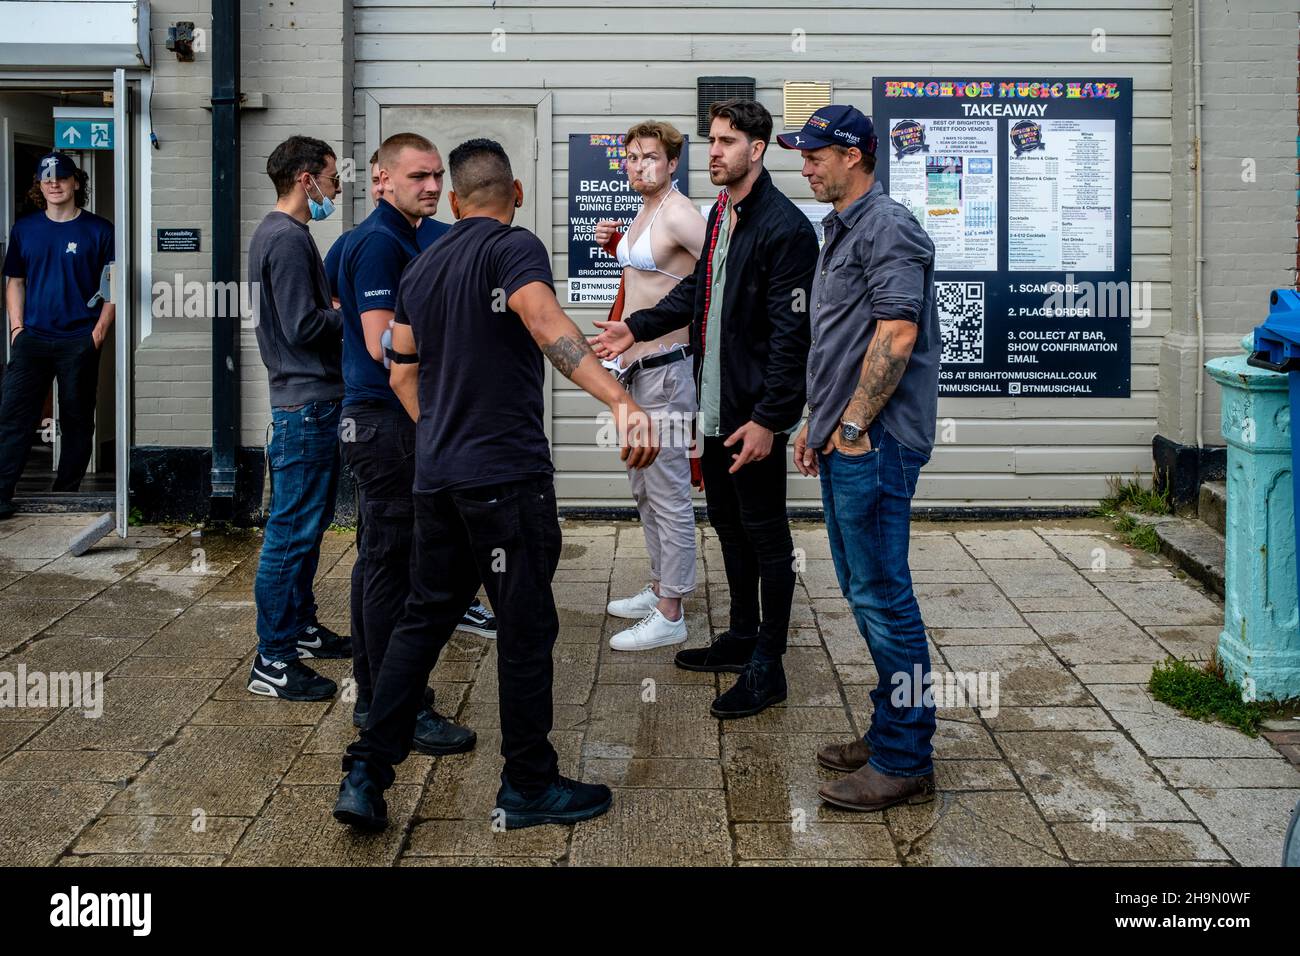 Un giovane uomo che indossa un Top Bikini è chiesto di lasciare Un Seafront Cafe by Security dopo aver intrattenito i clienti lì contro le regole Covid, Brighton, Regno Unito. Foto Stock